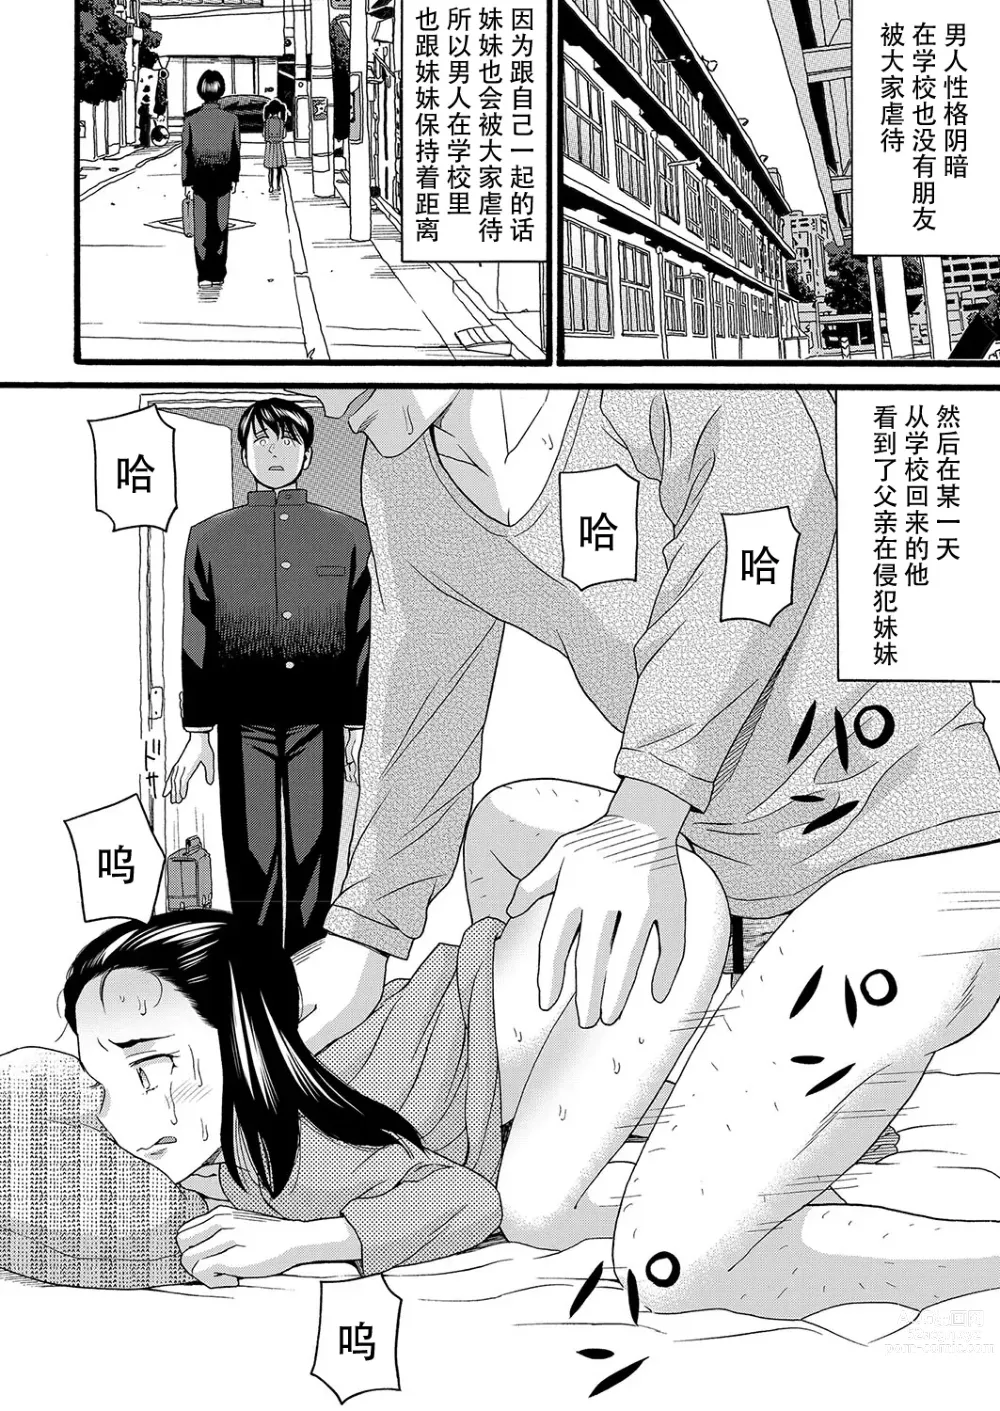 Page 2 of manga Konna Jibun ni Dare ga Shita